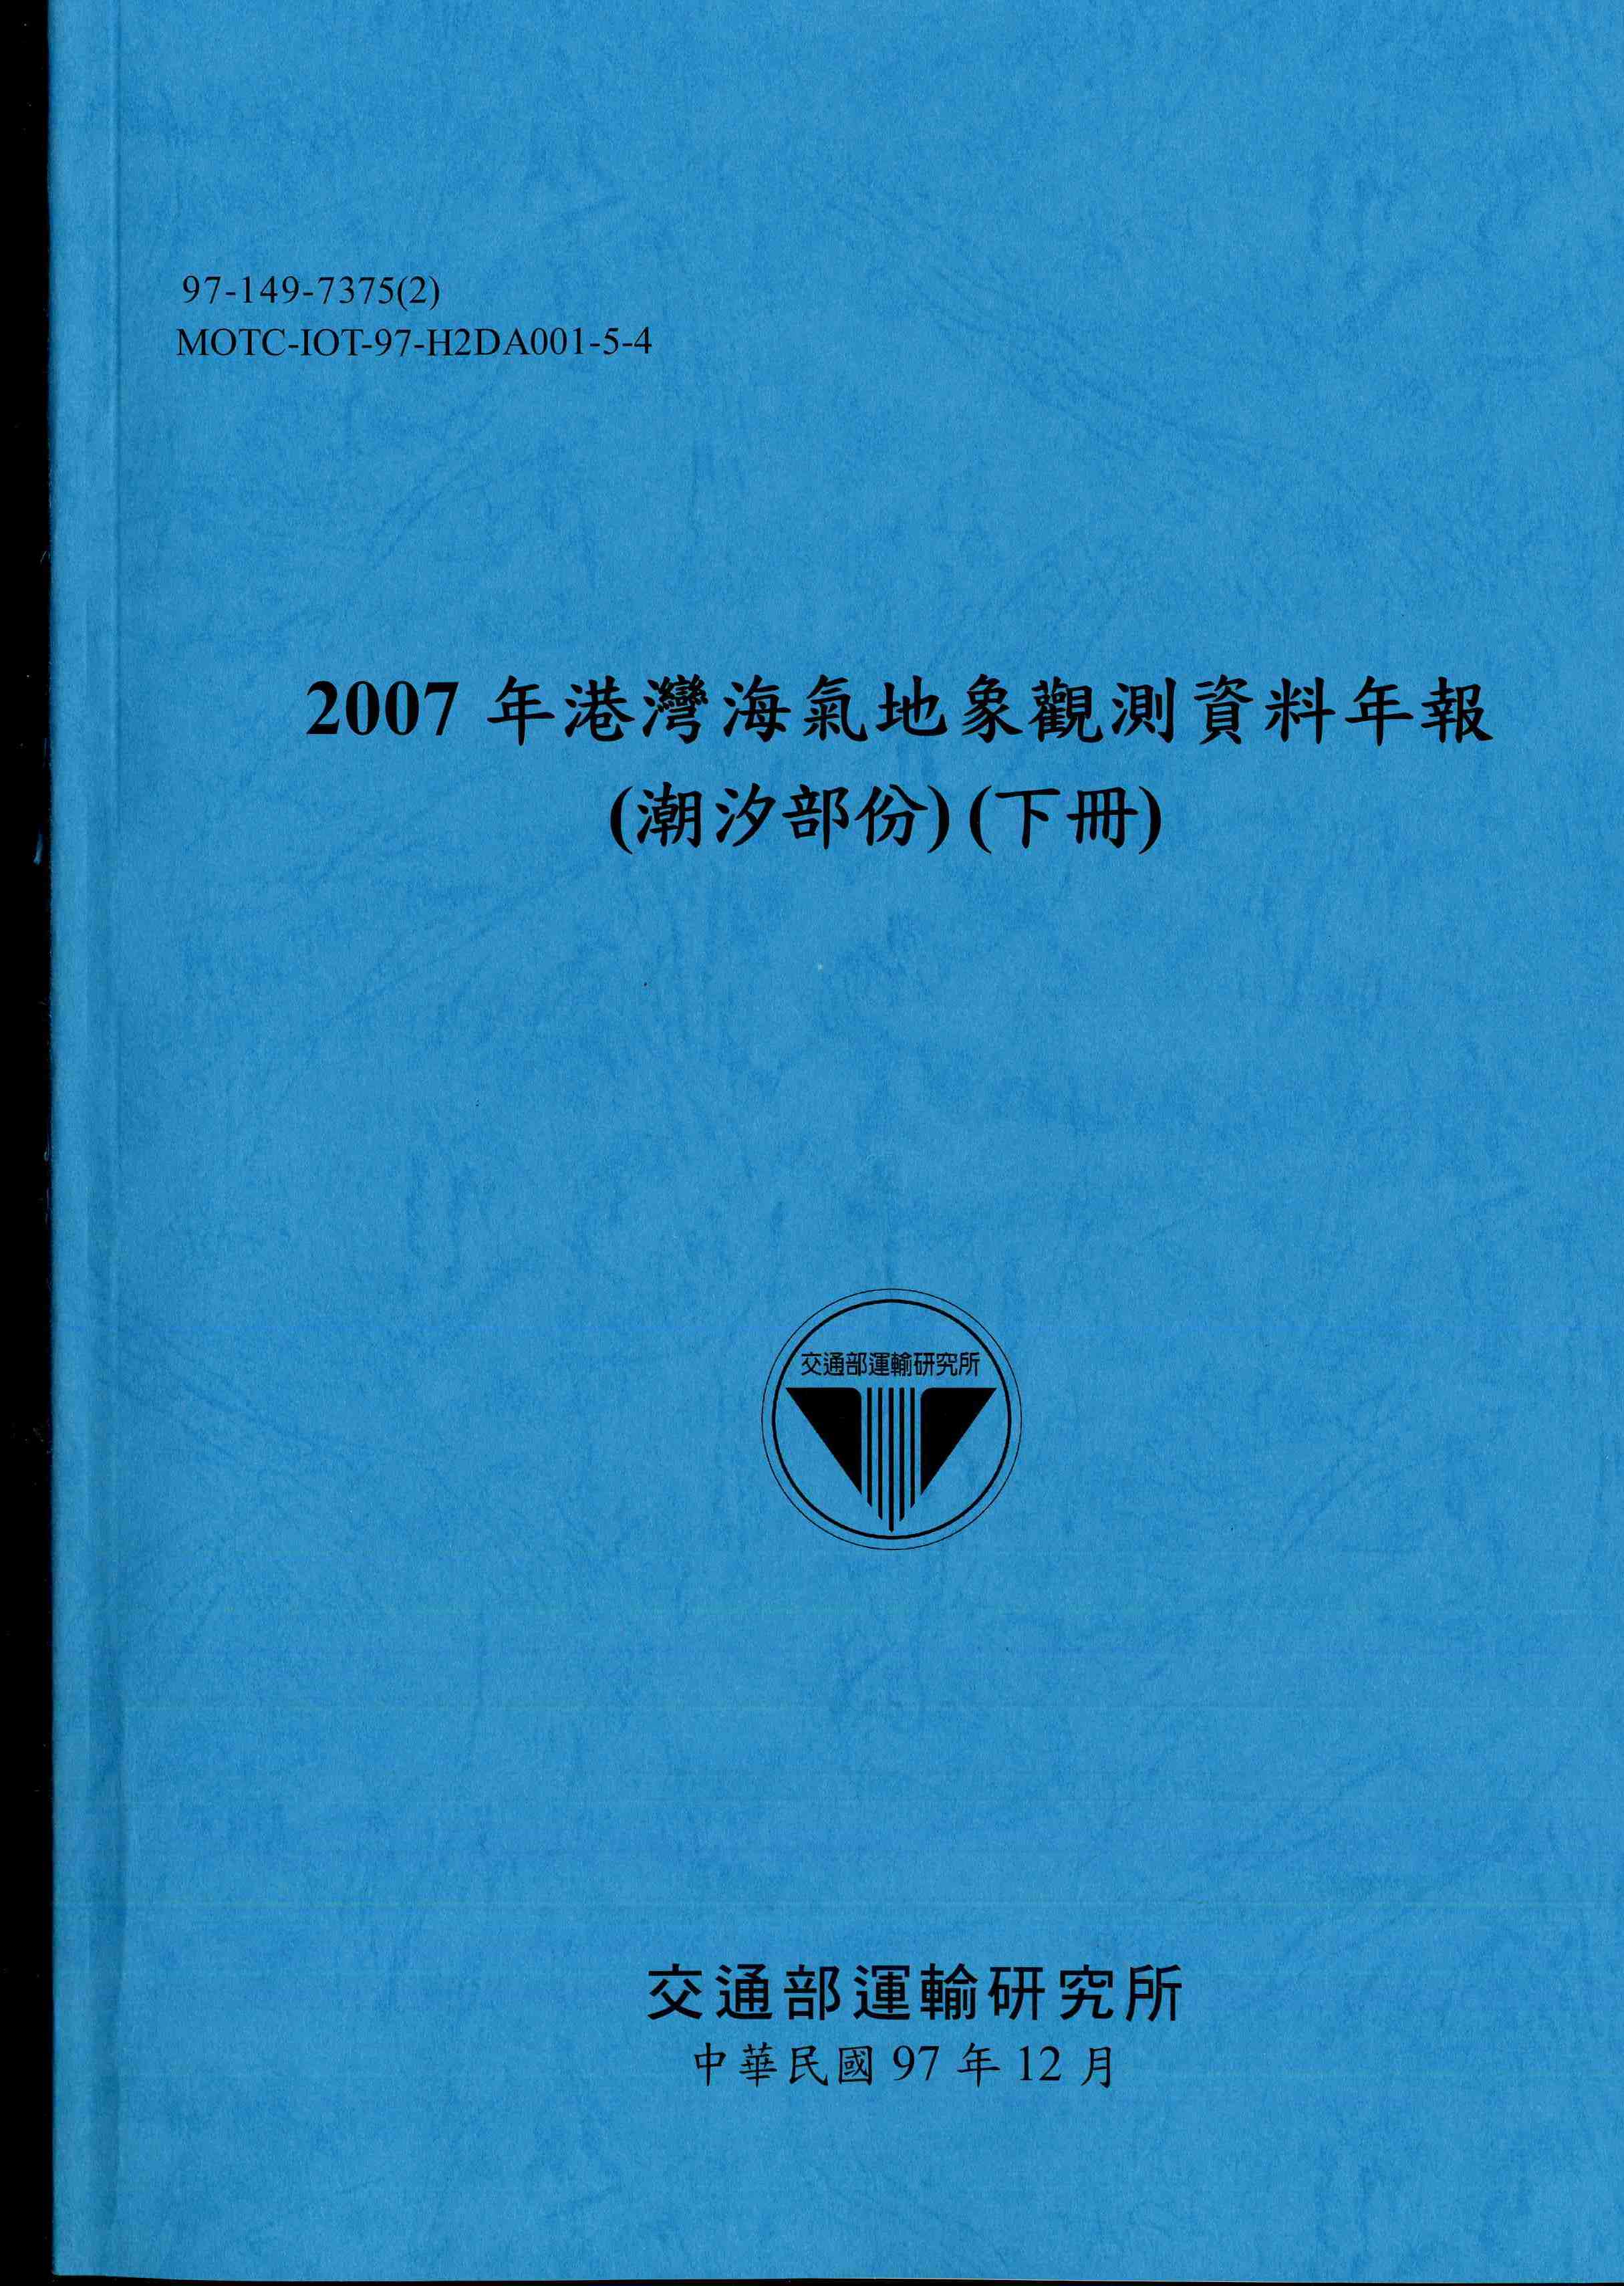 2007年港灣海氣地象觀測資料年報(潮汐部份)(下冊)